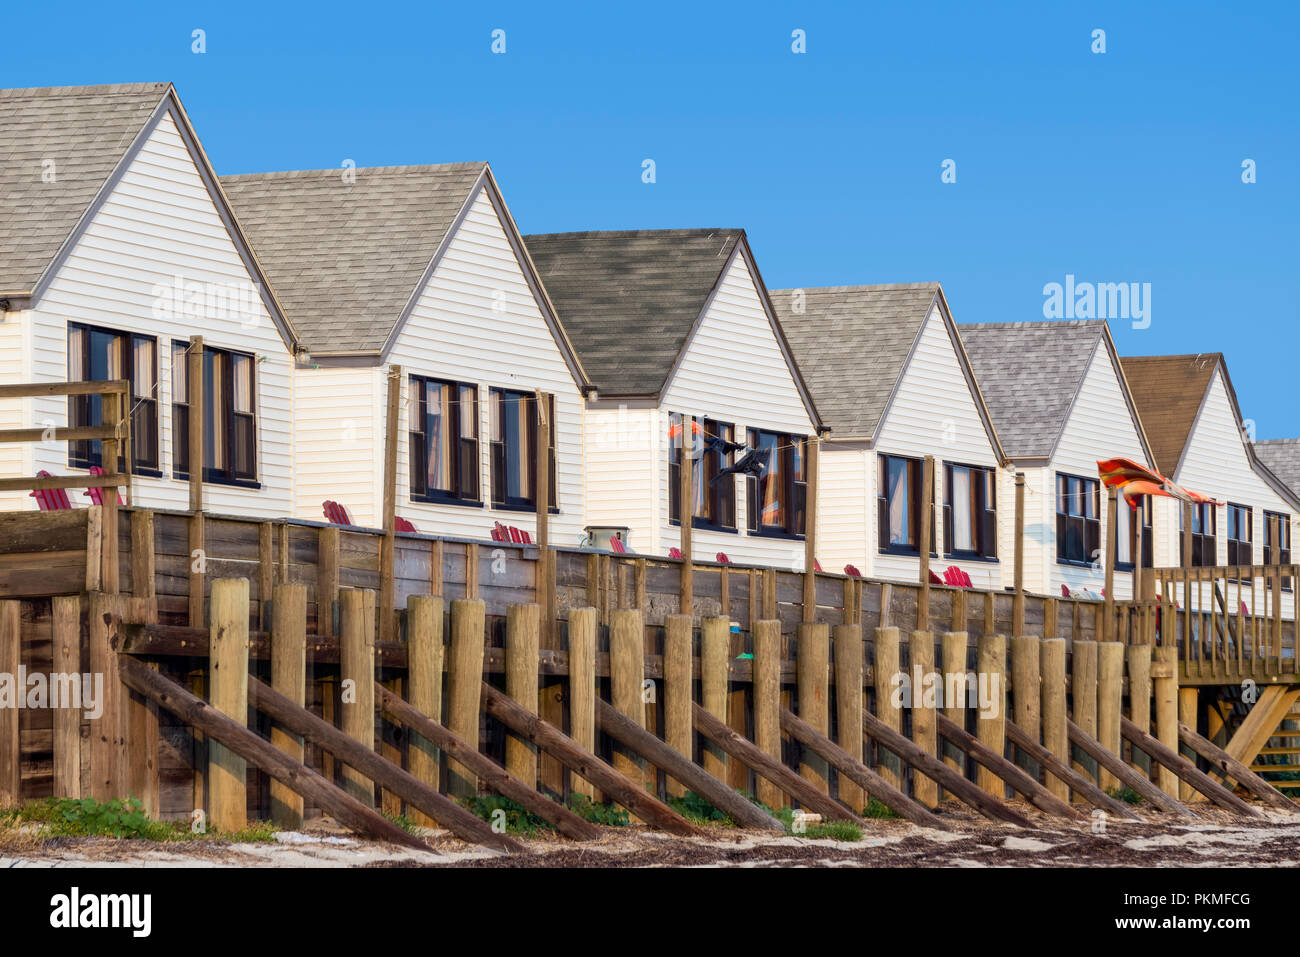 Location de chalets en bord de mer, Truro, Cape Cod, Massachusetts, États-Unis. Banque D'Images